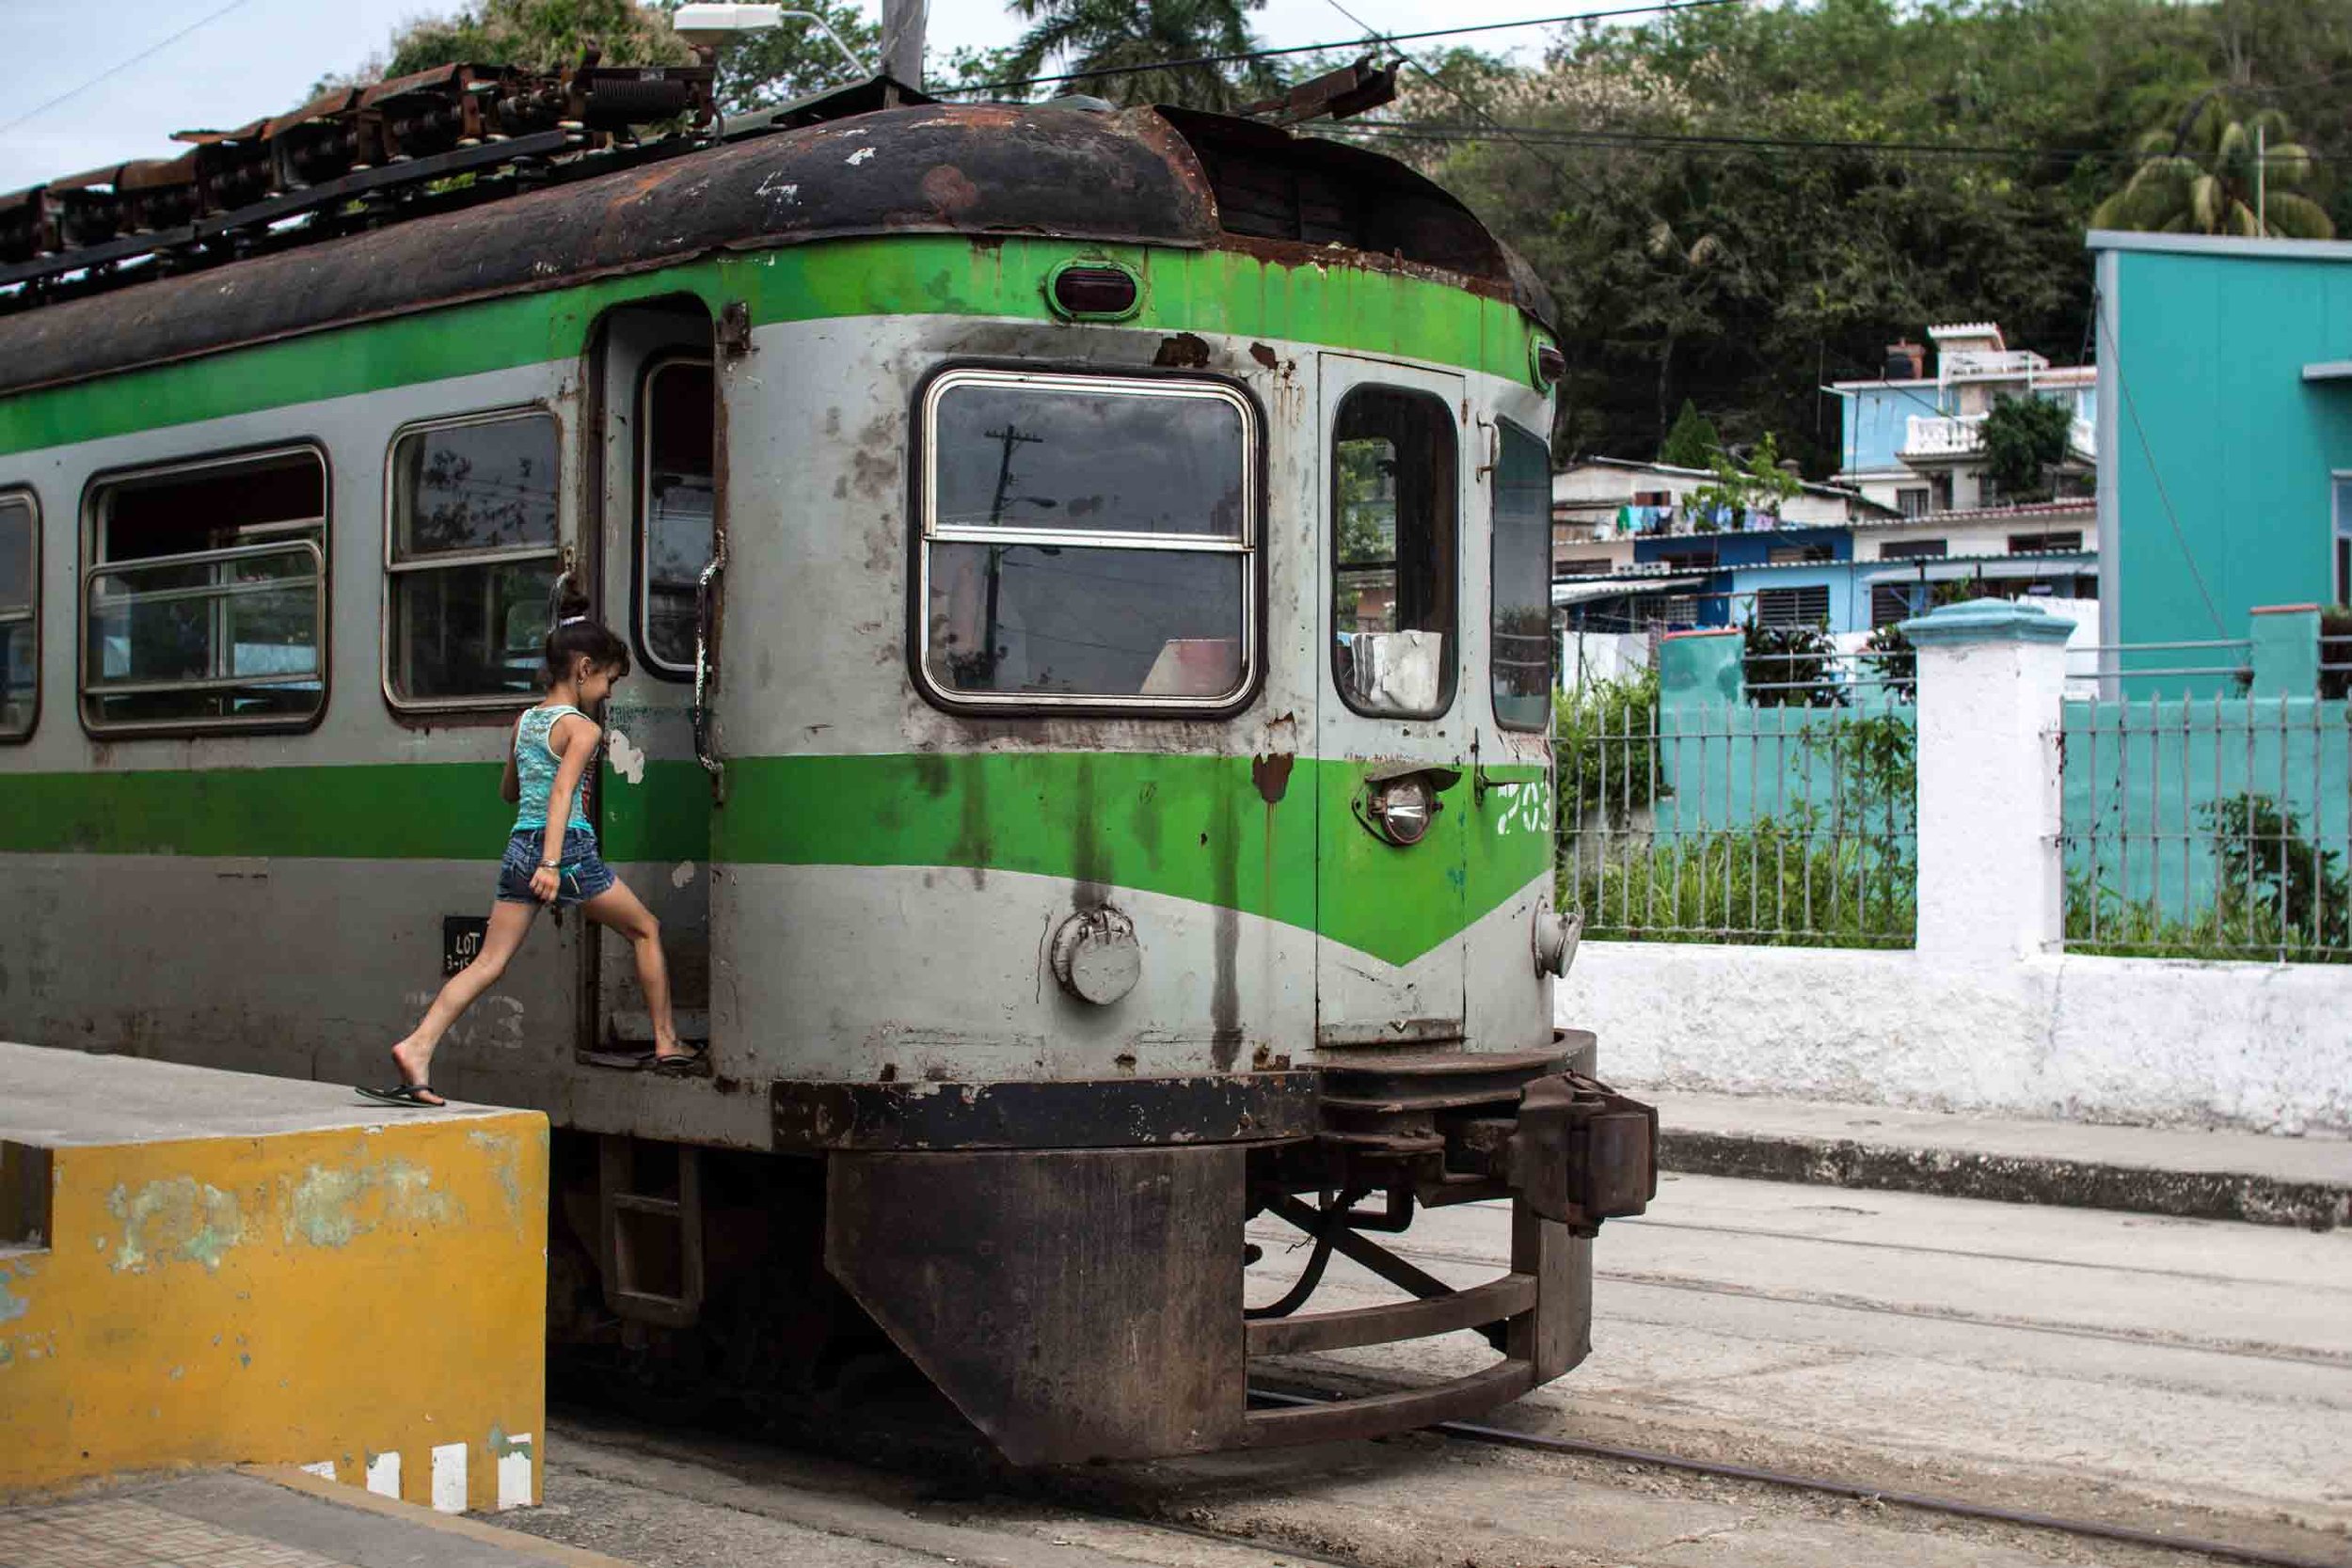 Train in Cuba